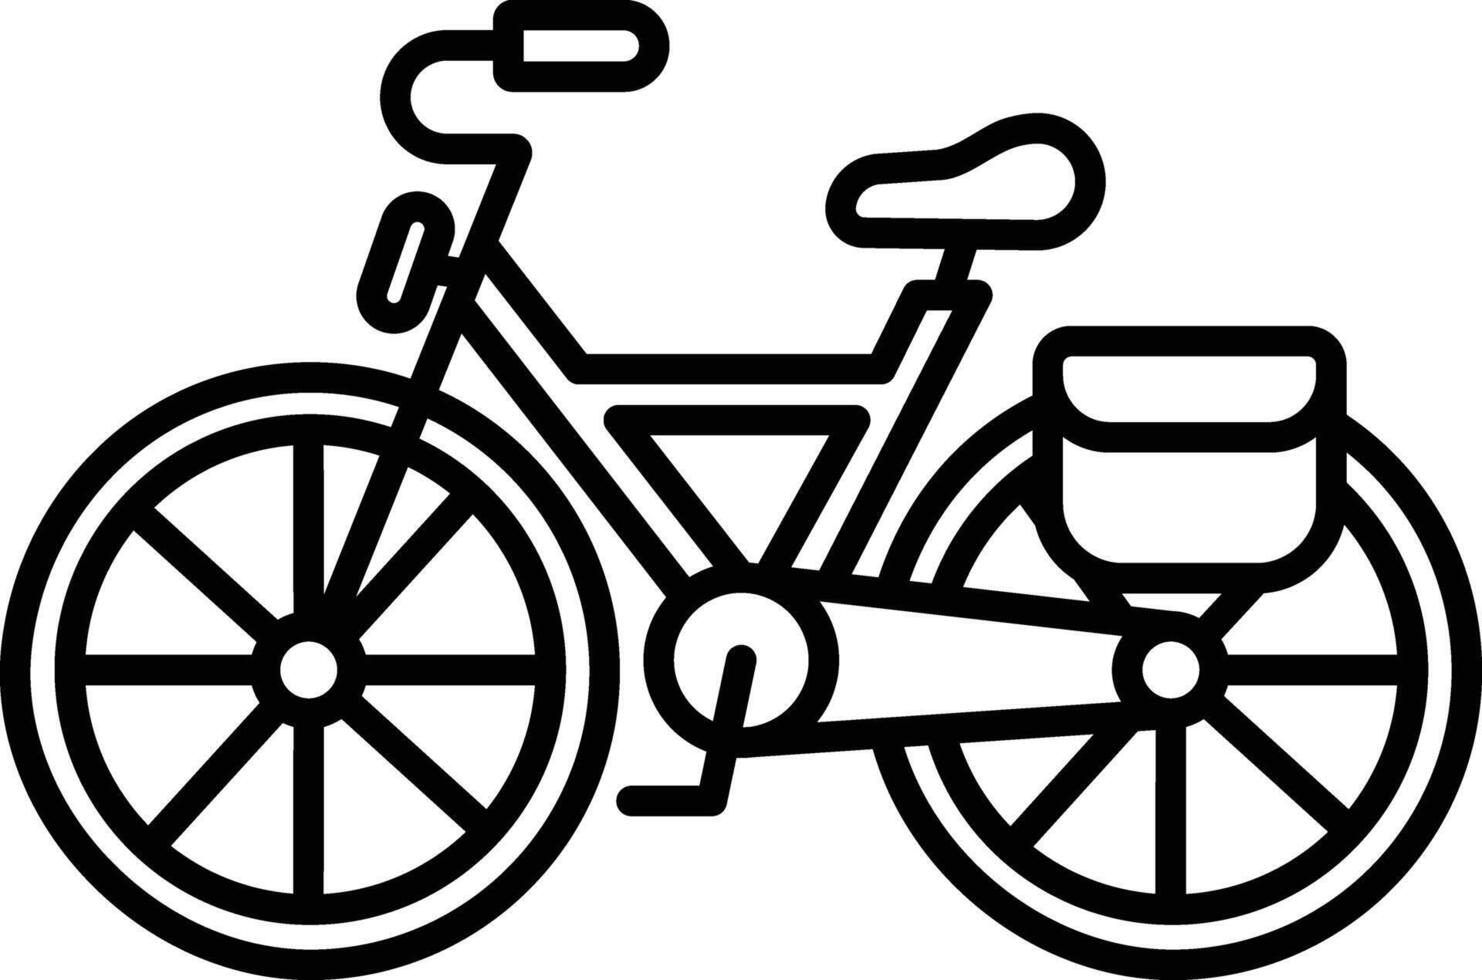 bicicleta esboço ilustração vetor